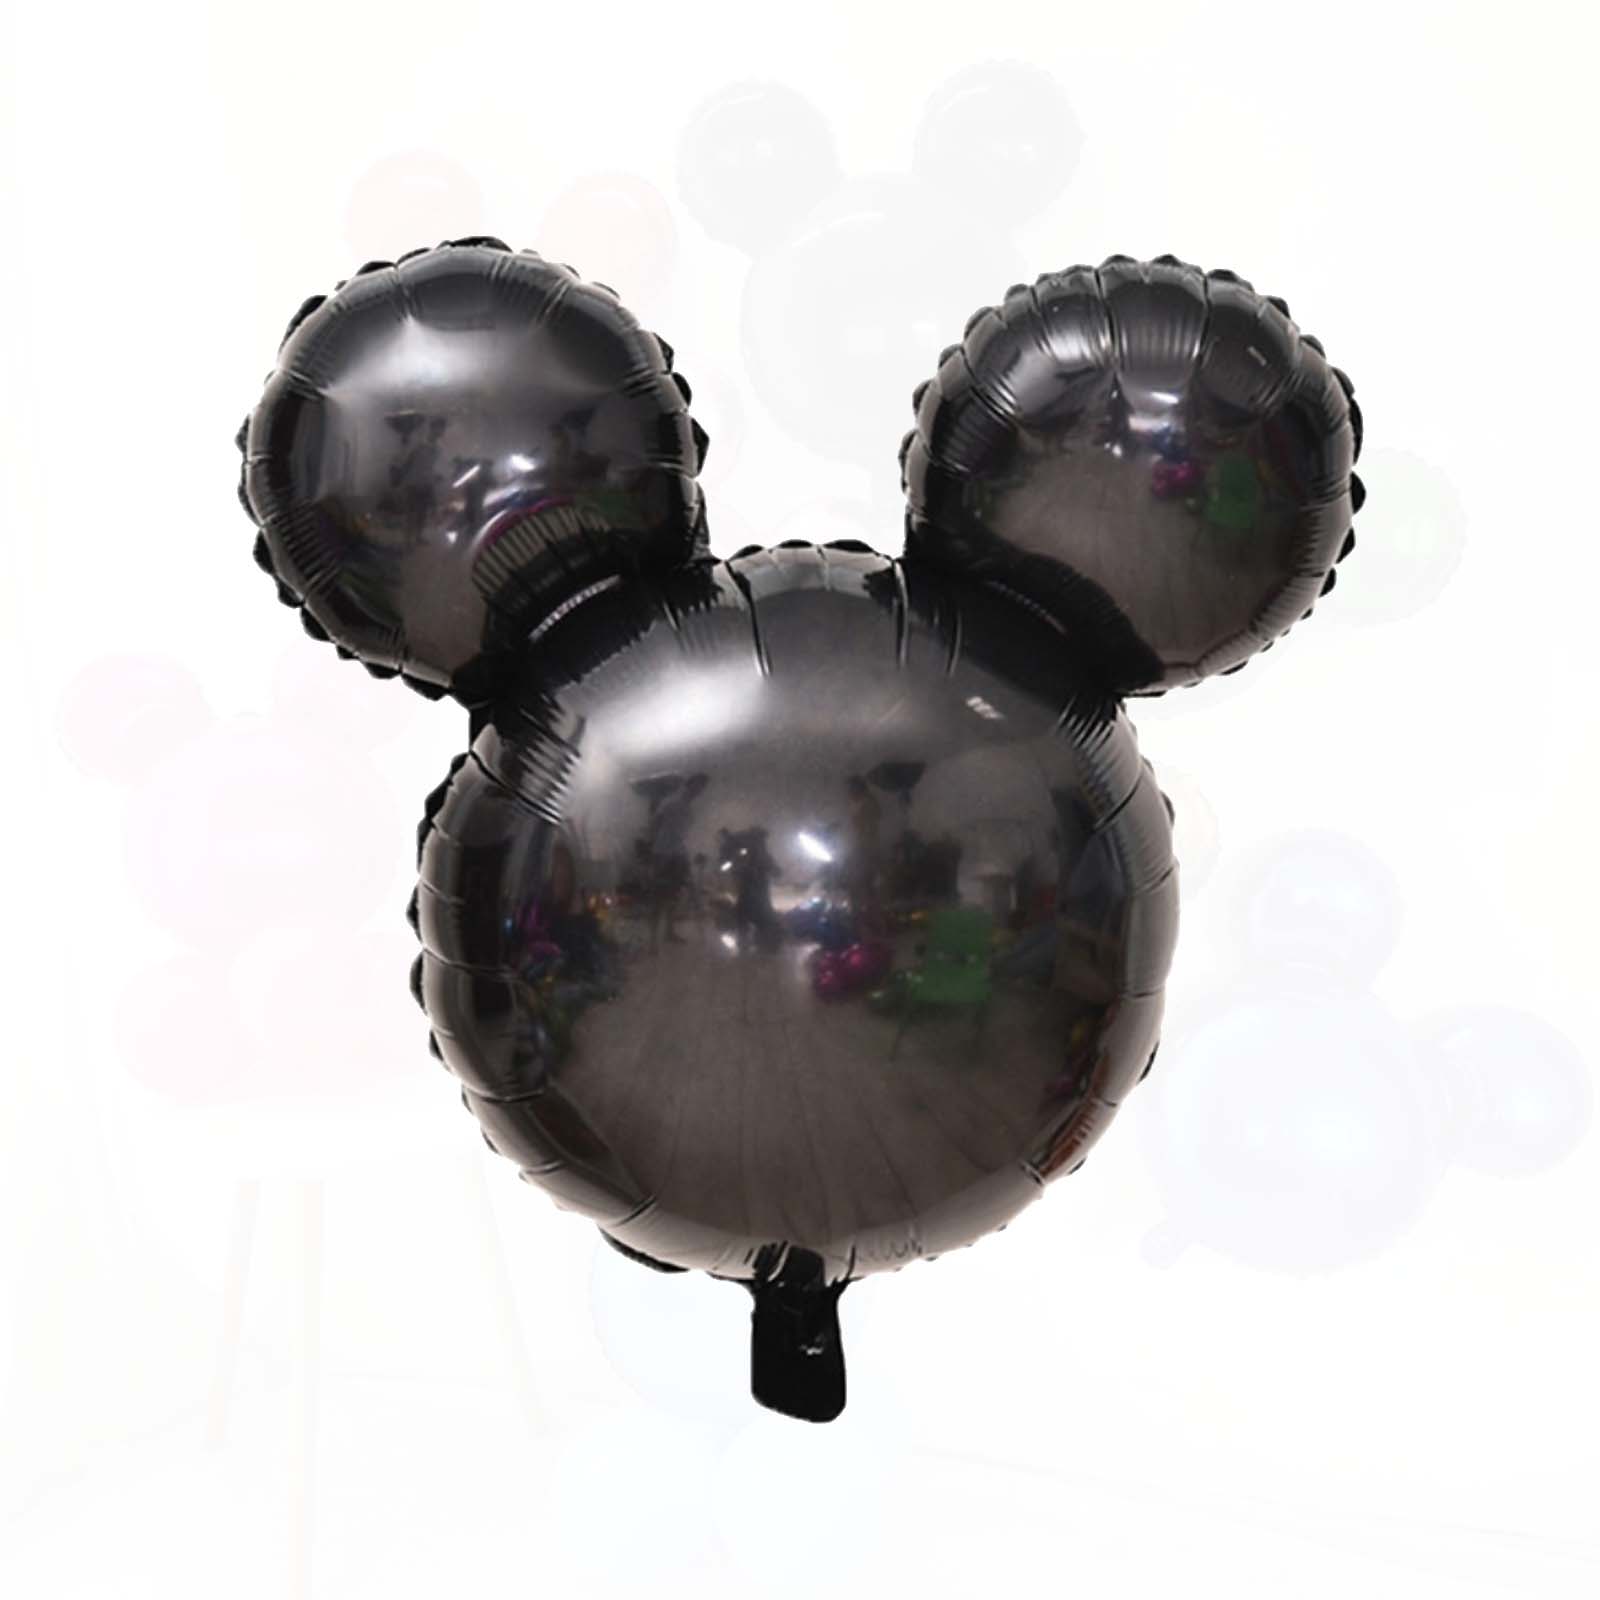 Vernietigen Vrijwillig door elkaar haspelen Black Mickey Mouse Foil Balloon (24 Inches) from Ellie's Party Supply